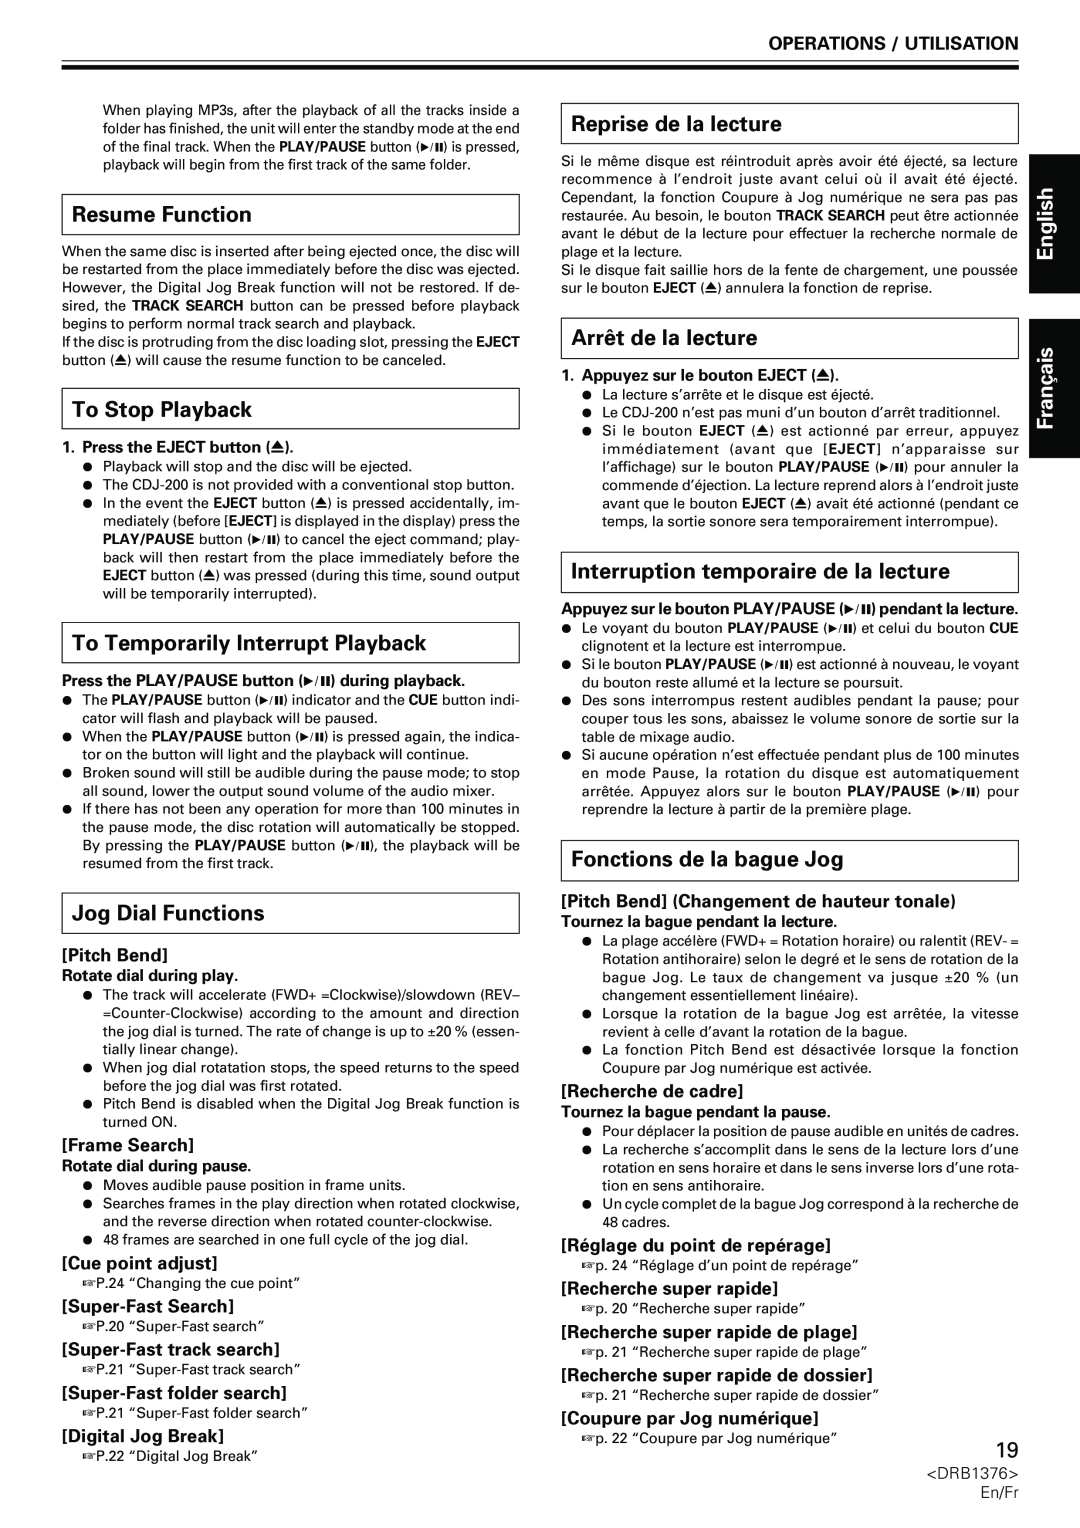 Pioneer CDJ-200 manual Resume Function, Reprise de la lecture, Arrêt de la lecture, English ais, To Stop Playback, Franç 